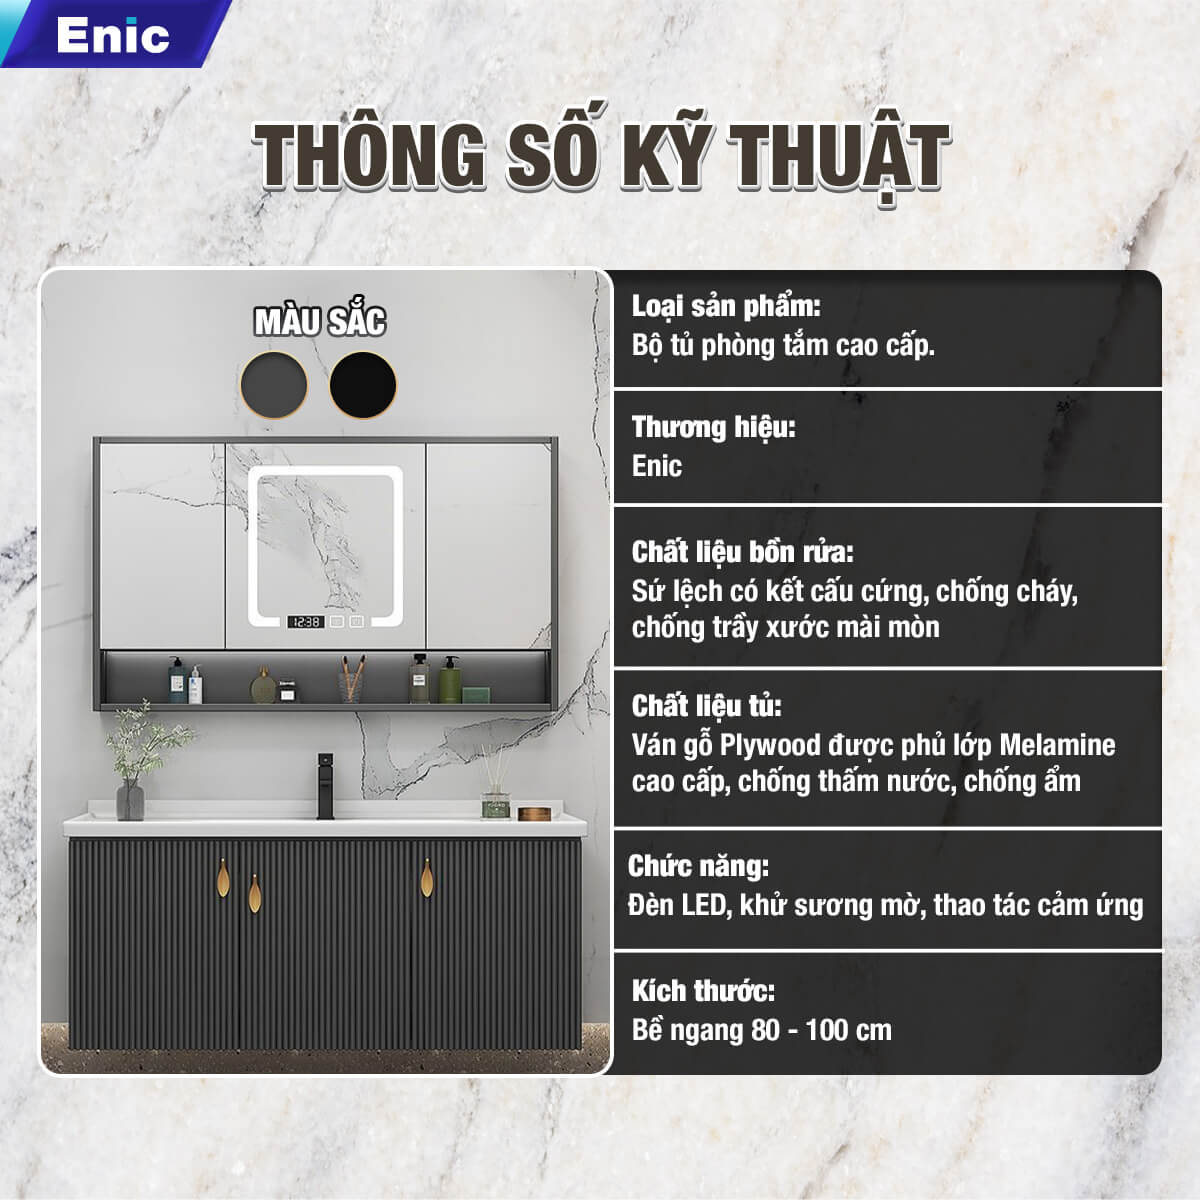 Bộ tủ phòng tắm cao cấp Enic LS - 80cm Gương Thông Minh - 36